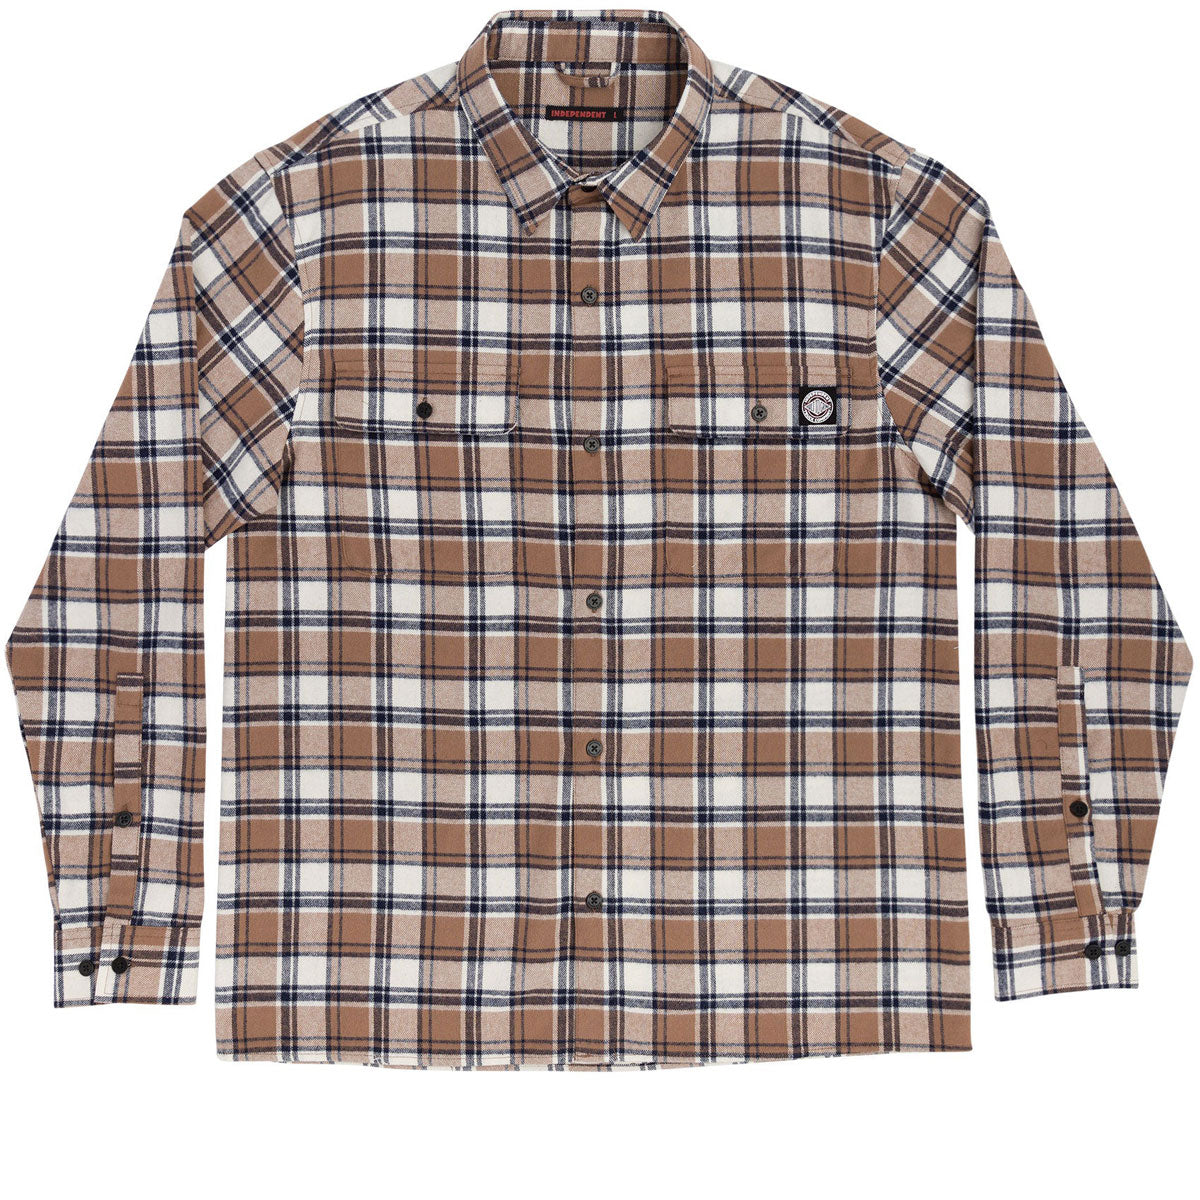 Independent BTG Cress Long Sleeve Flannel Shirt - Ginger Plaid image 1